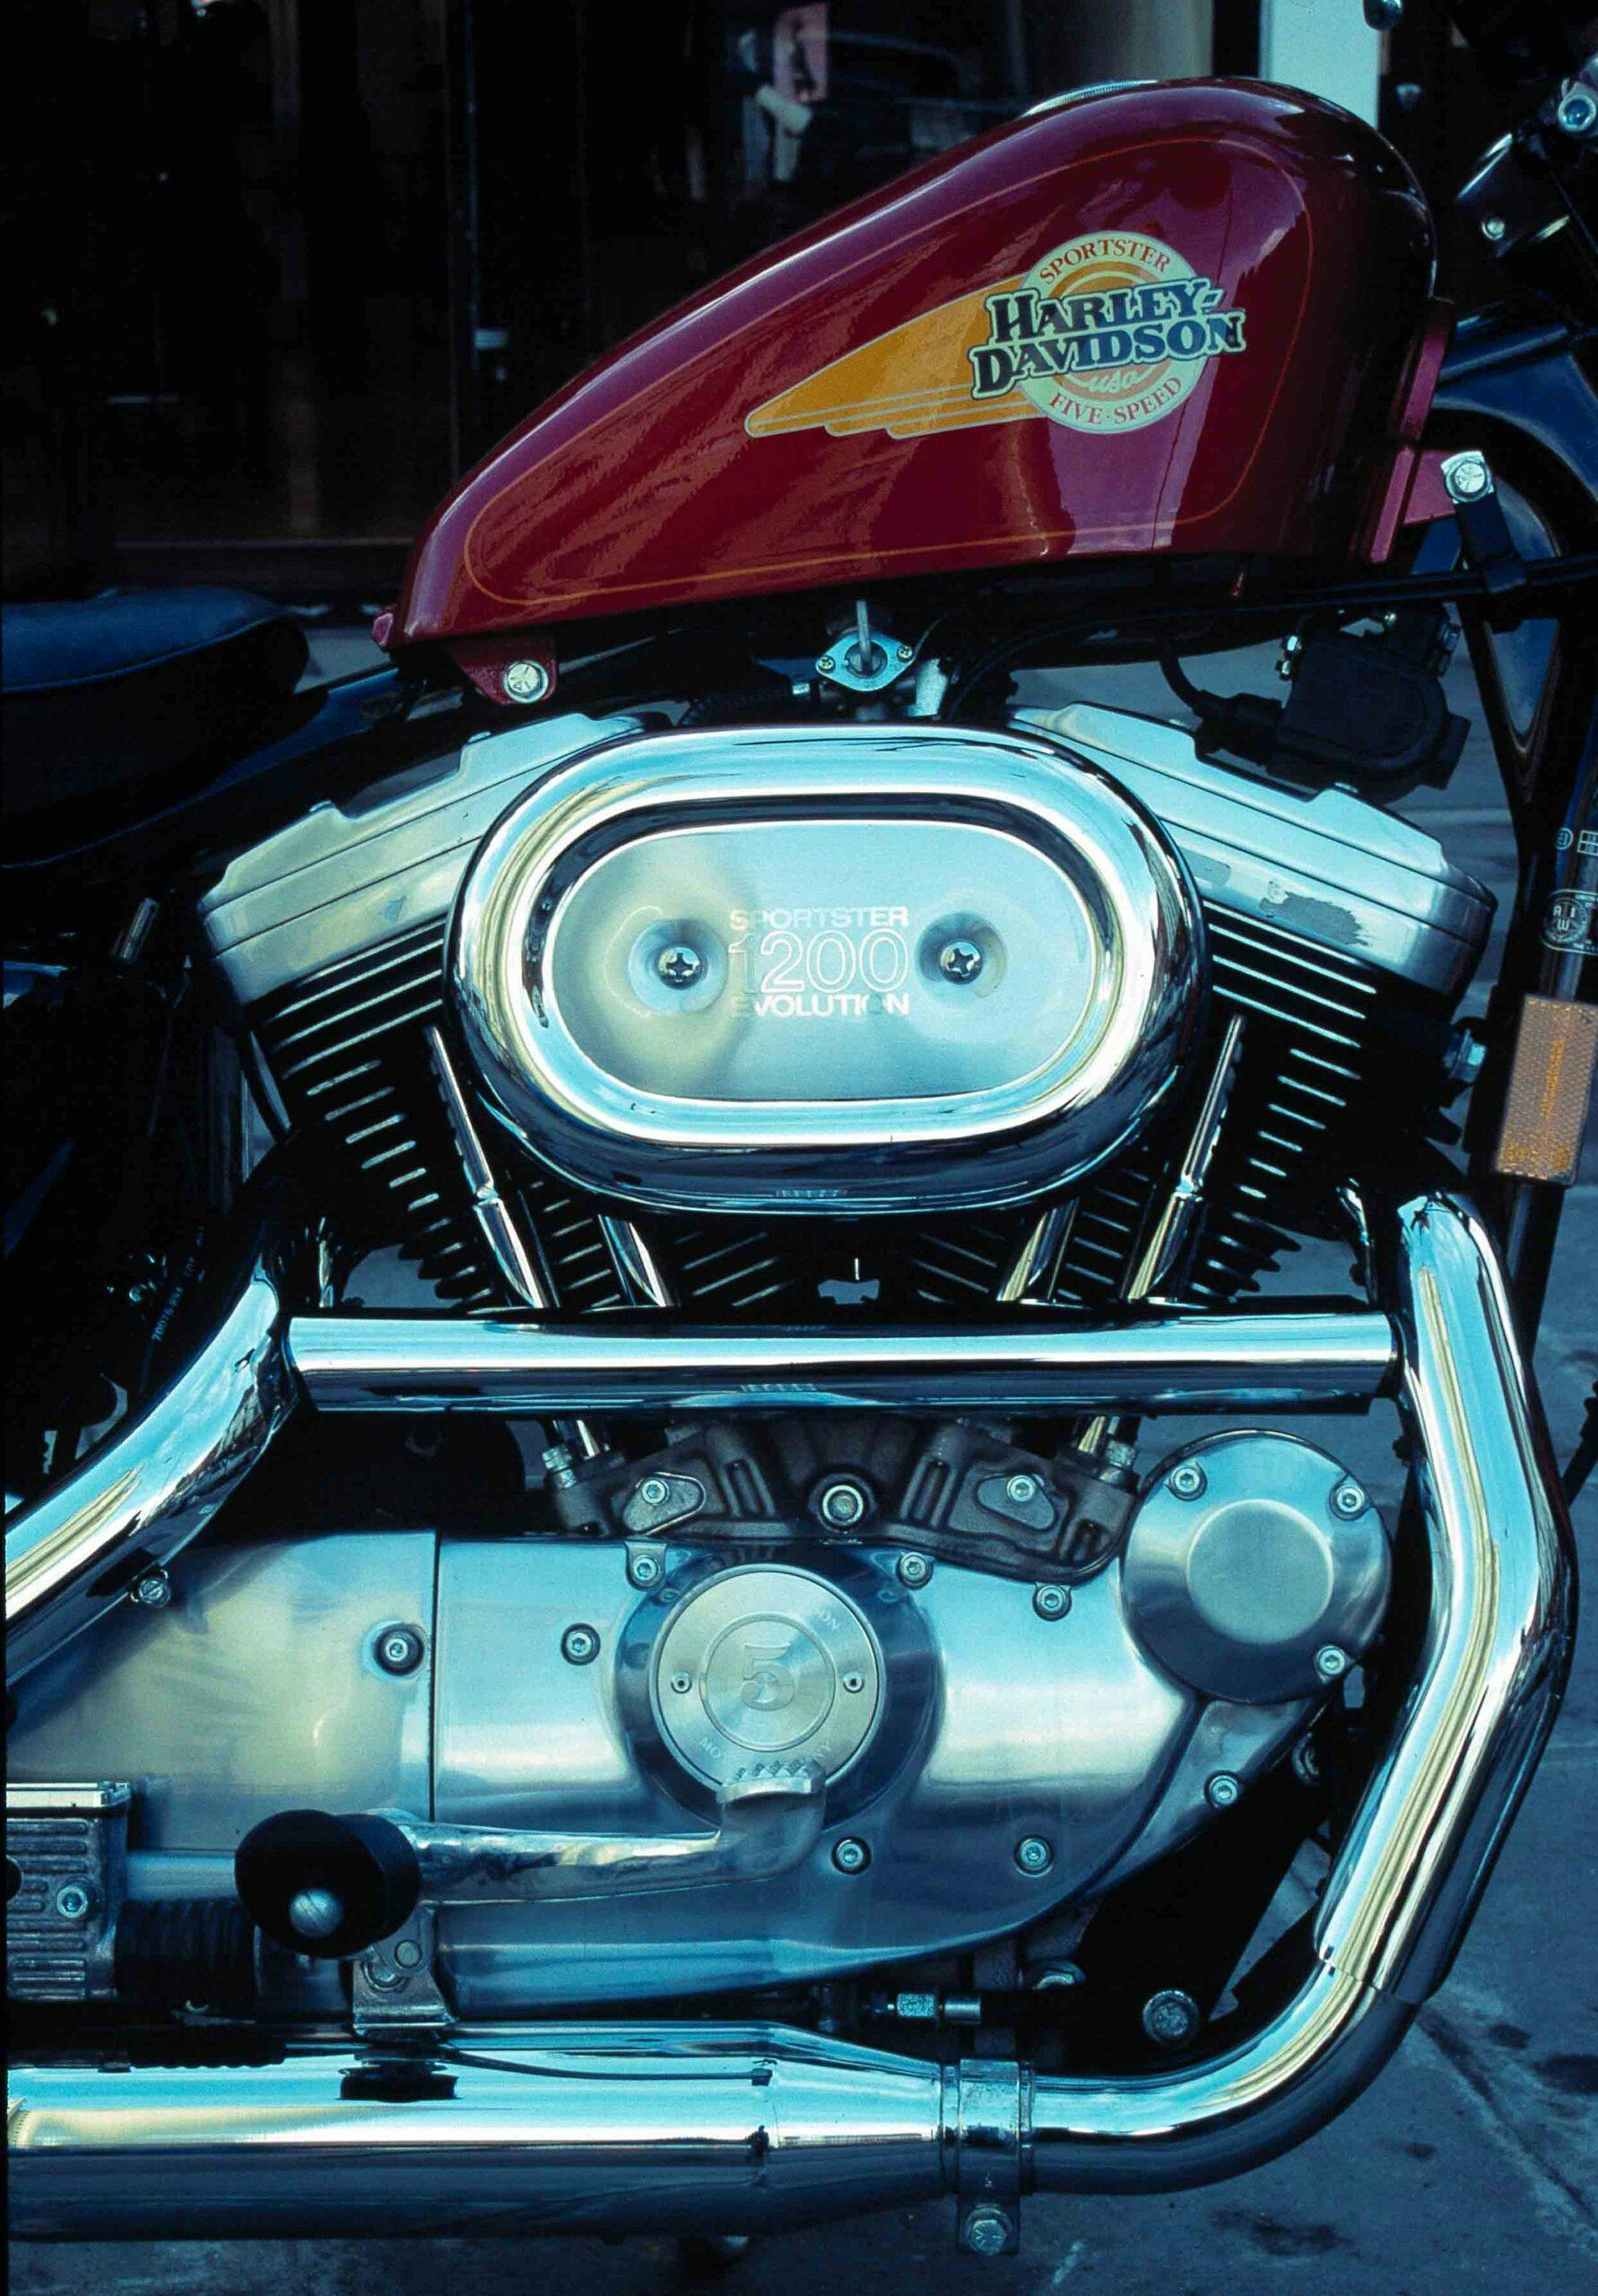 Harley-Davidson 1990 Sportster 1200 engine vertical